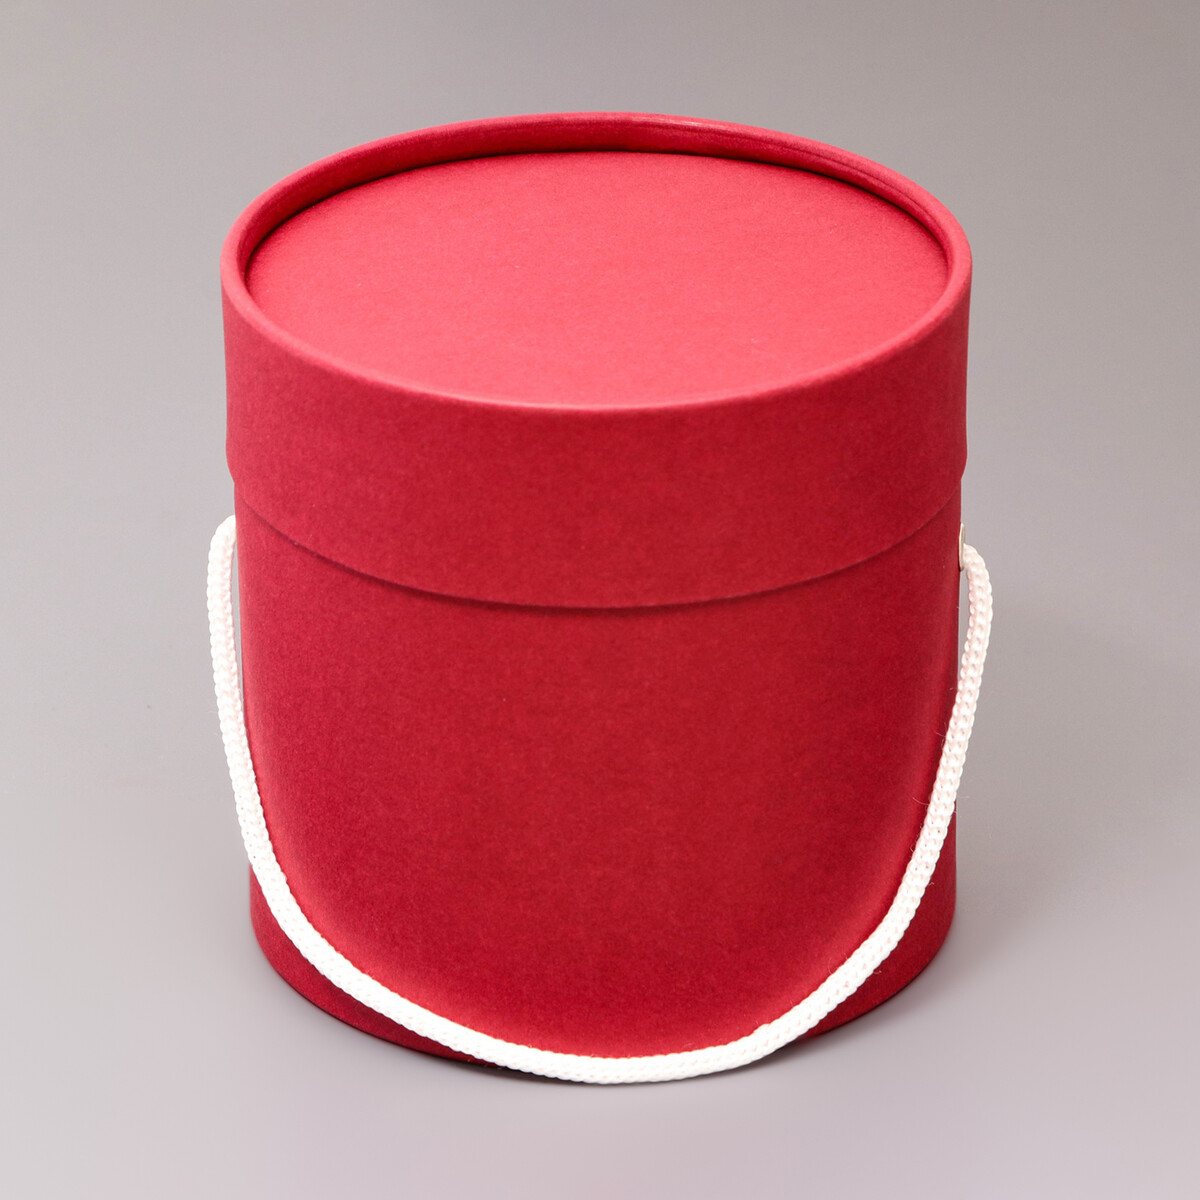 Подарочная коробка, круглая, бордовая,с шнурком, 12 х 12 см подарочная коробка круглая белая с шнурком 12 х 12 см